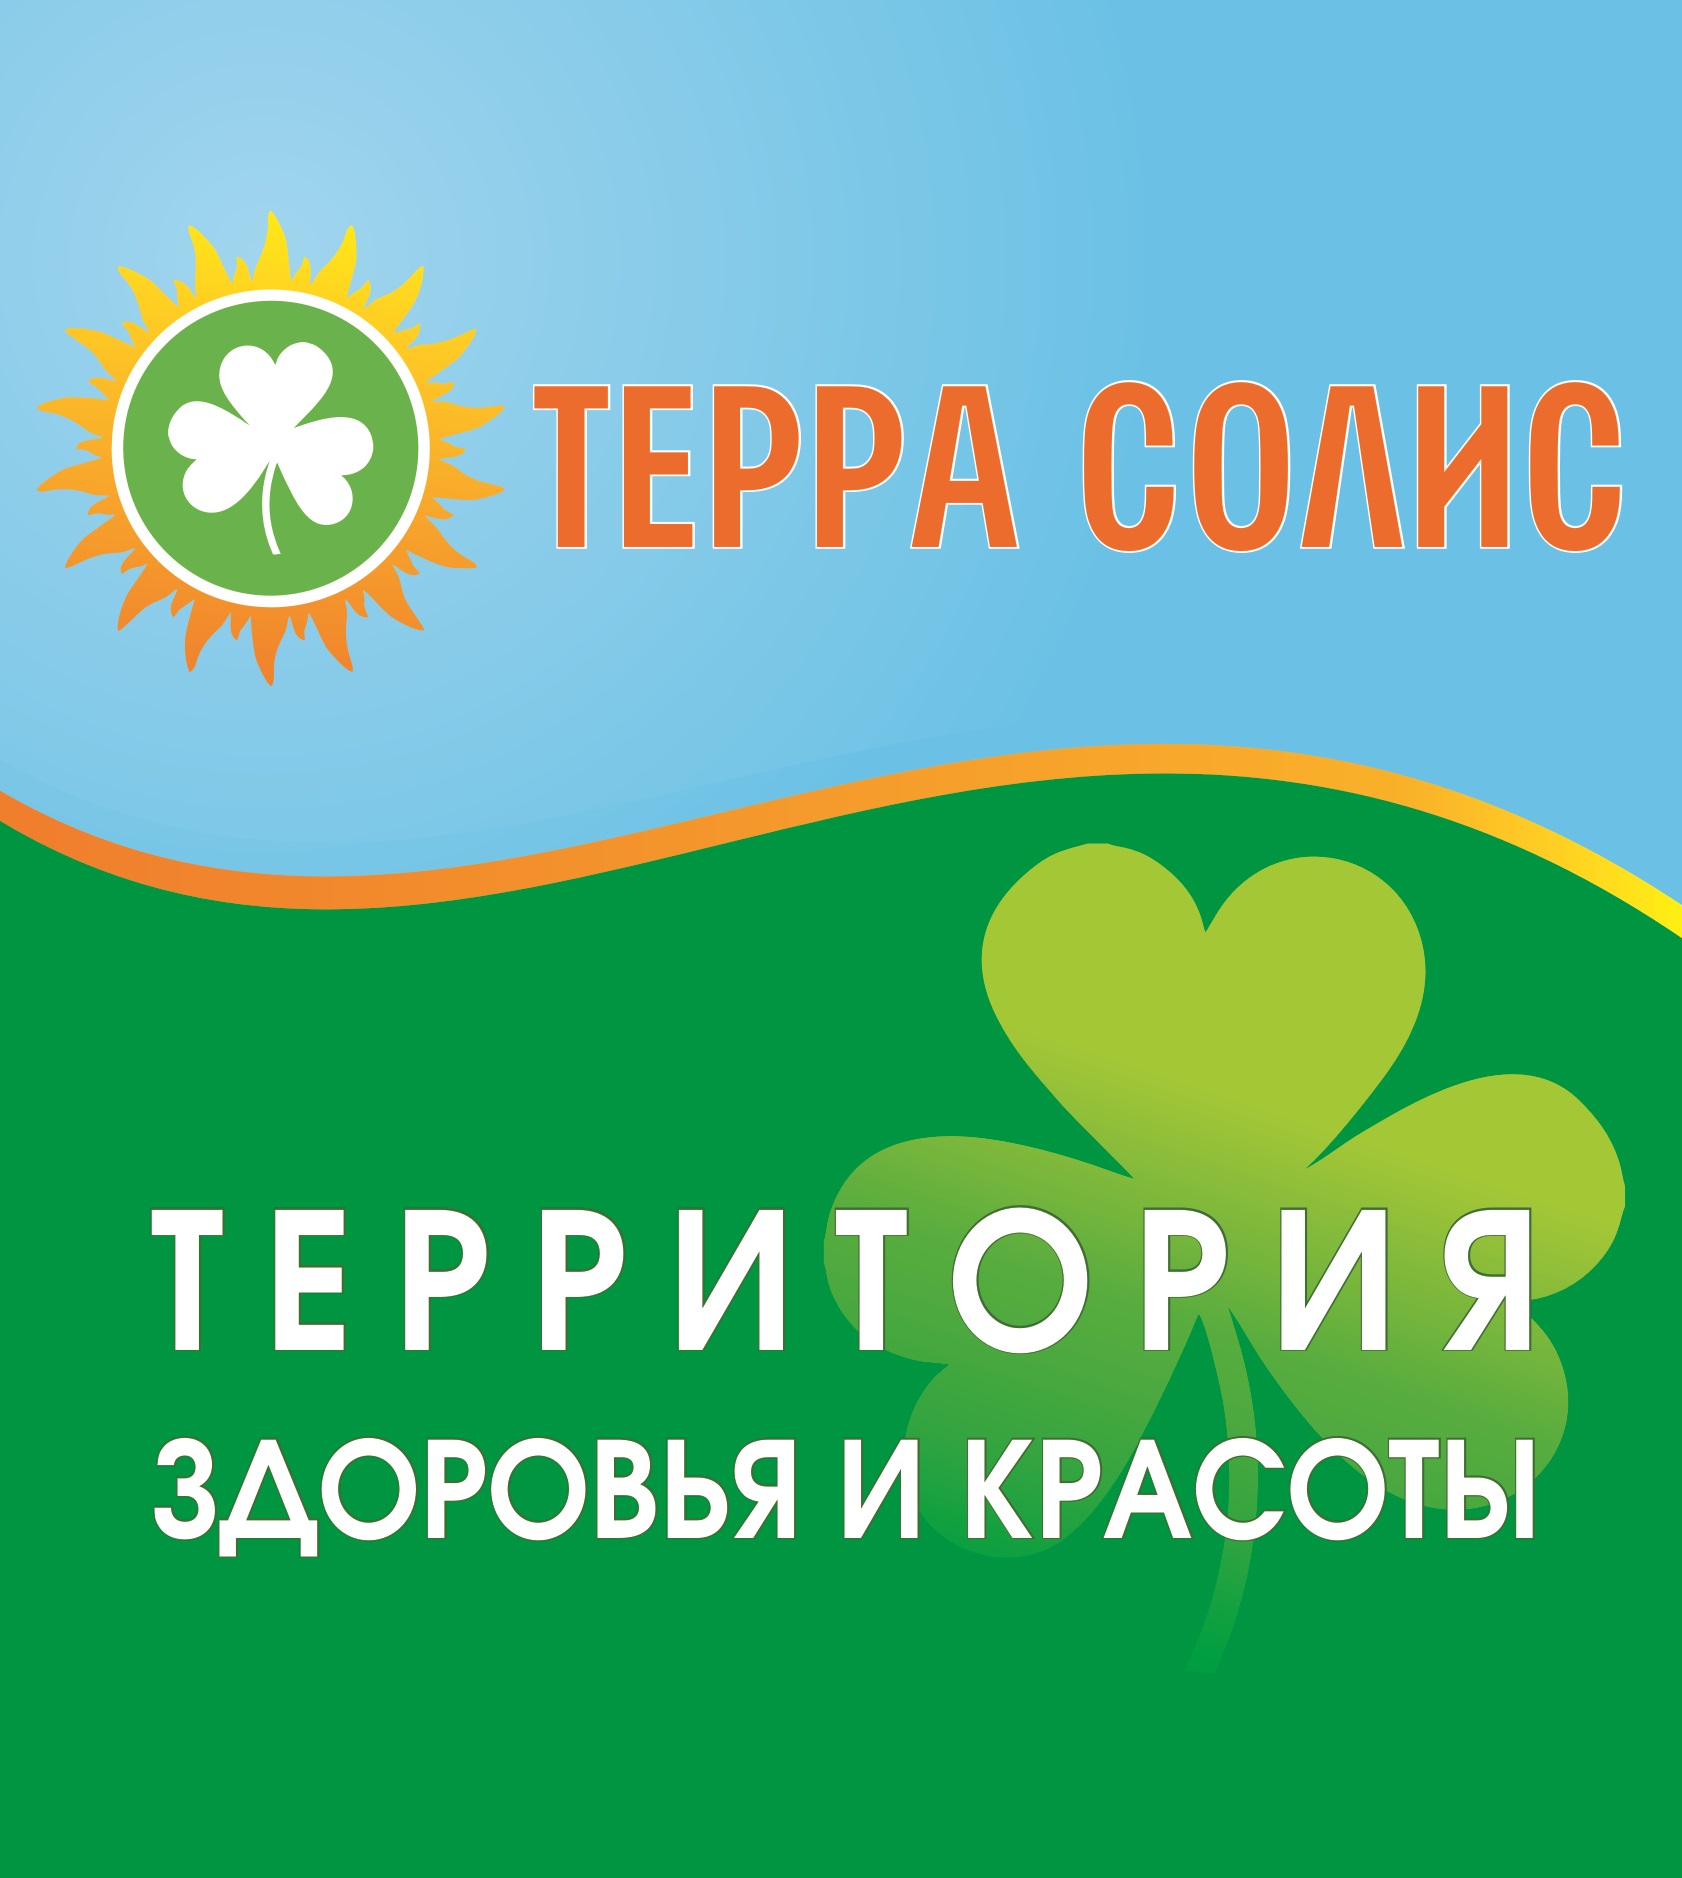 «Территория здоровья и красоты» открывается в Нижнем Новгороде